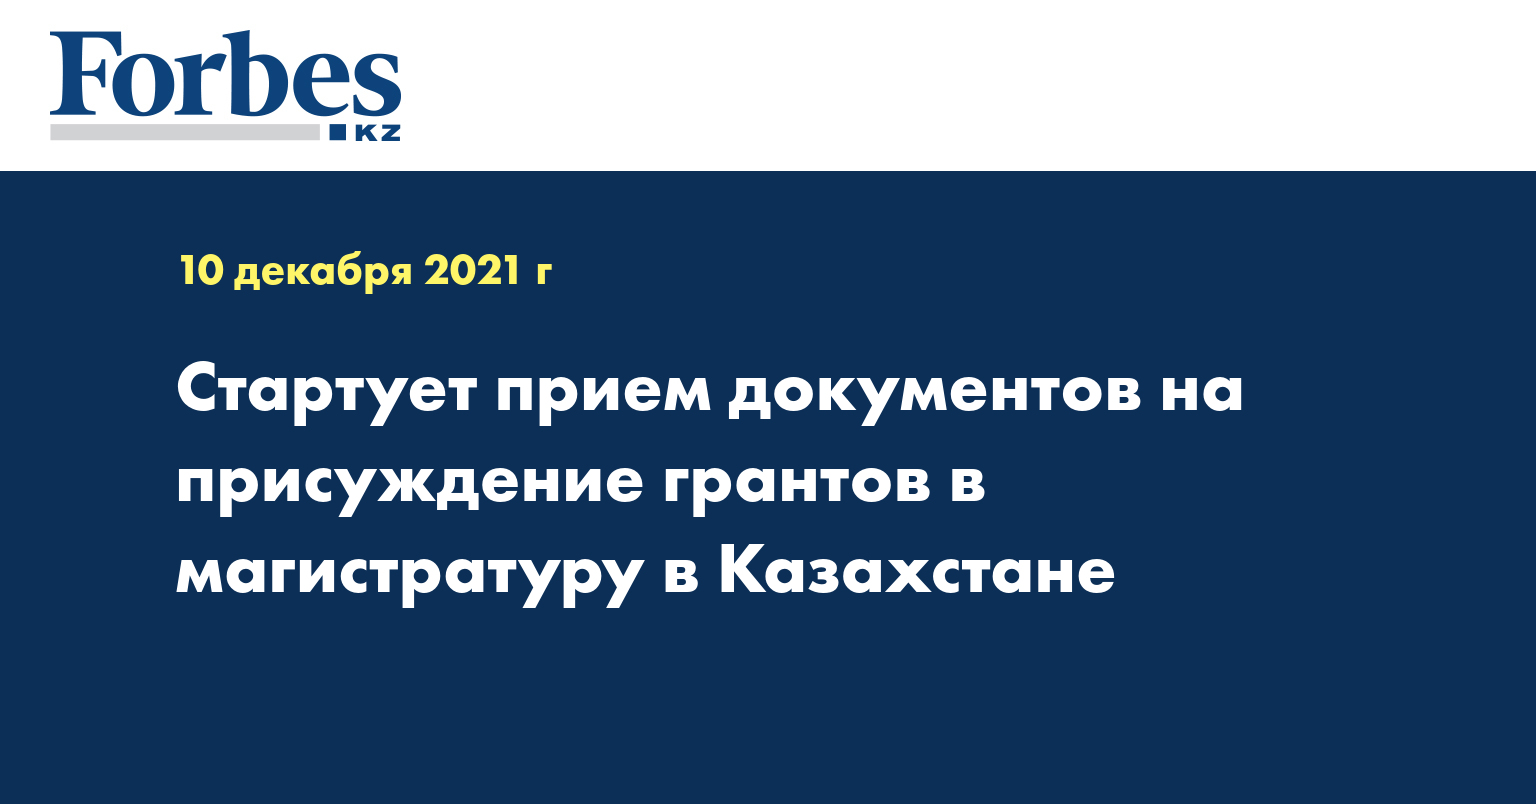 Стартует прием документов на присуждение грантов в магистратуру в Казахстане